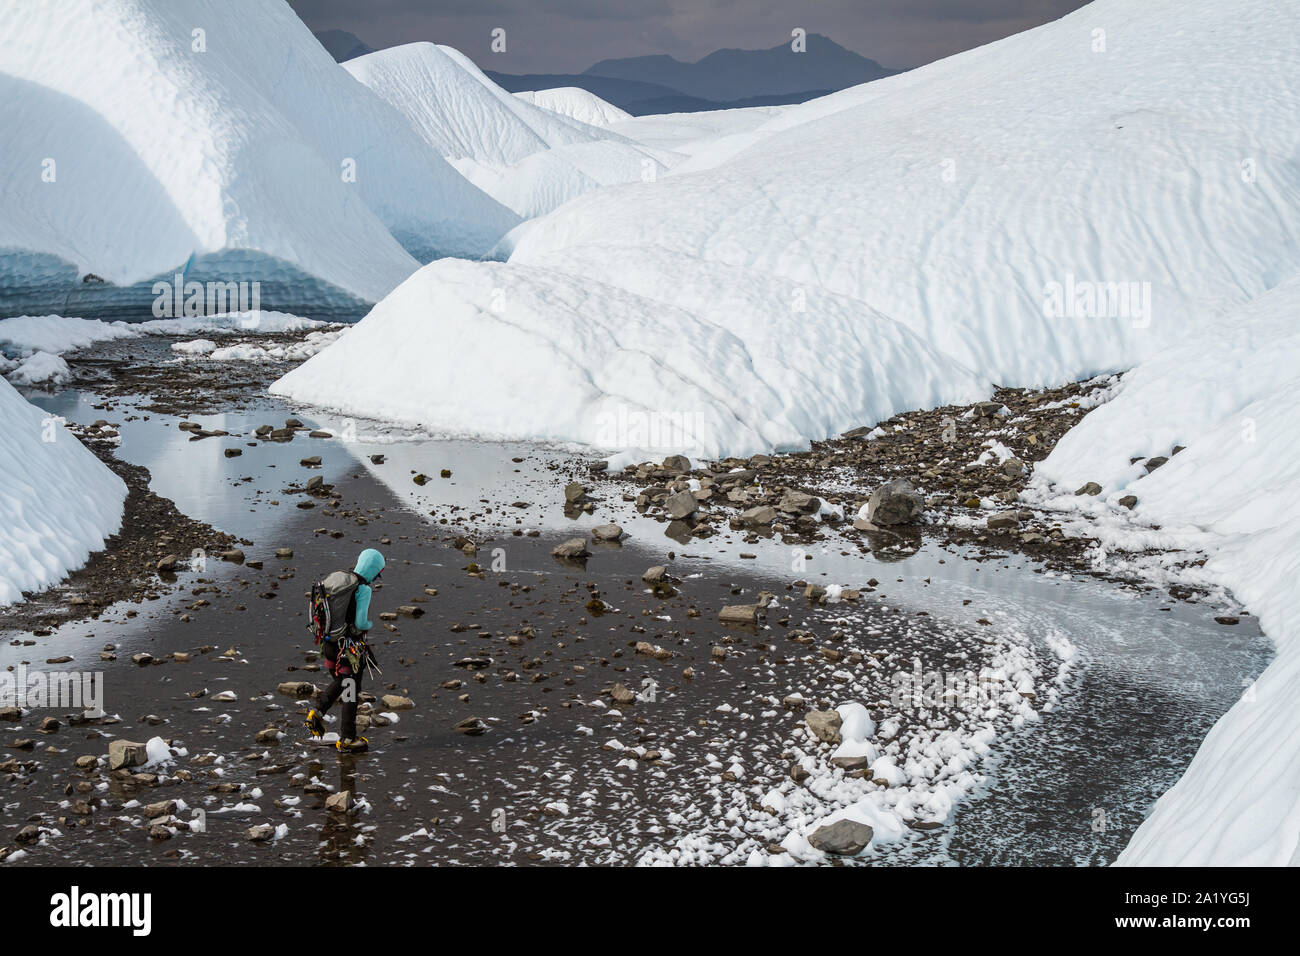 Tief im Hinterland in Alaska auf der Matanuska Gletscher, eine junge, weibliche Eiskletterer fließt durch einen breiten, felsigen Tal voller seichtem Wasser. Stockfoto